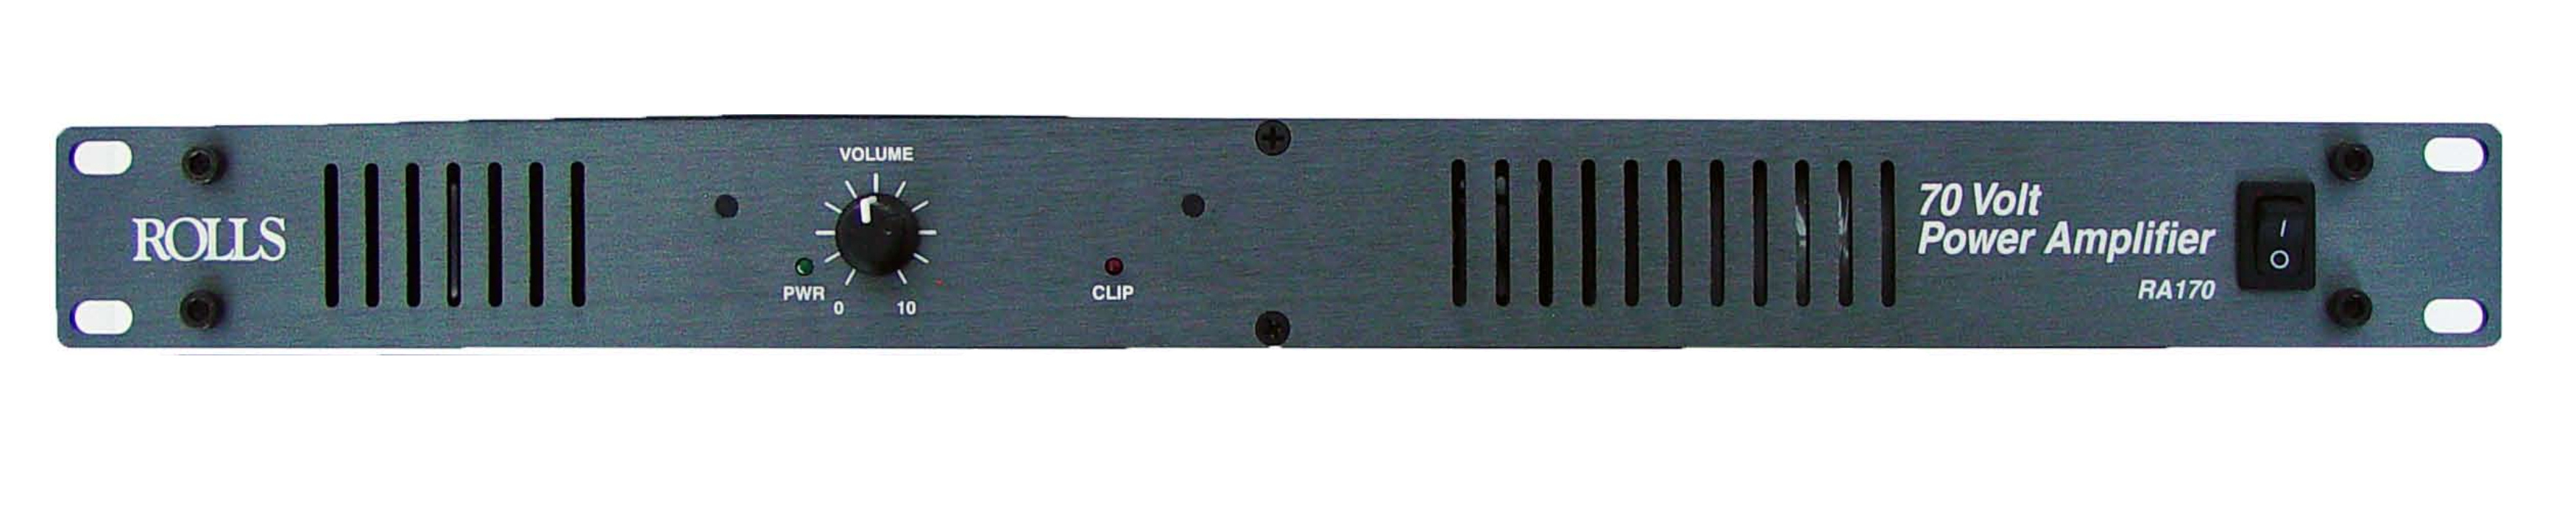 Rolls RA170 70-Volt/70 Watt Power Amplifier,Black